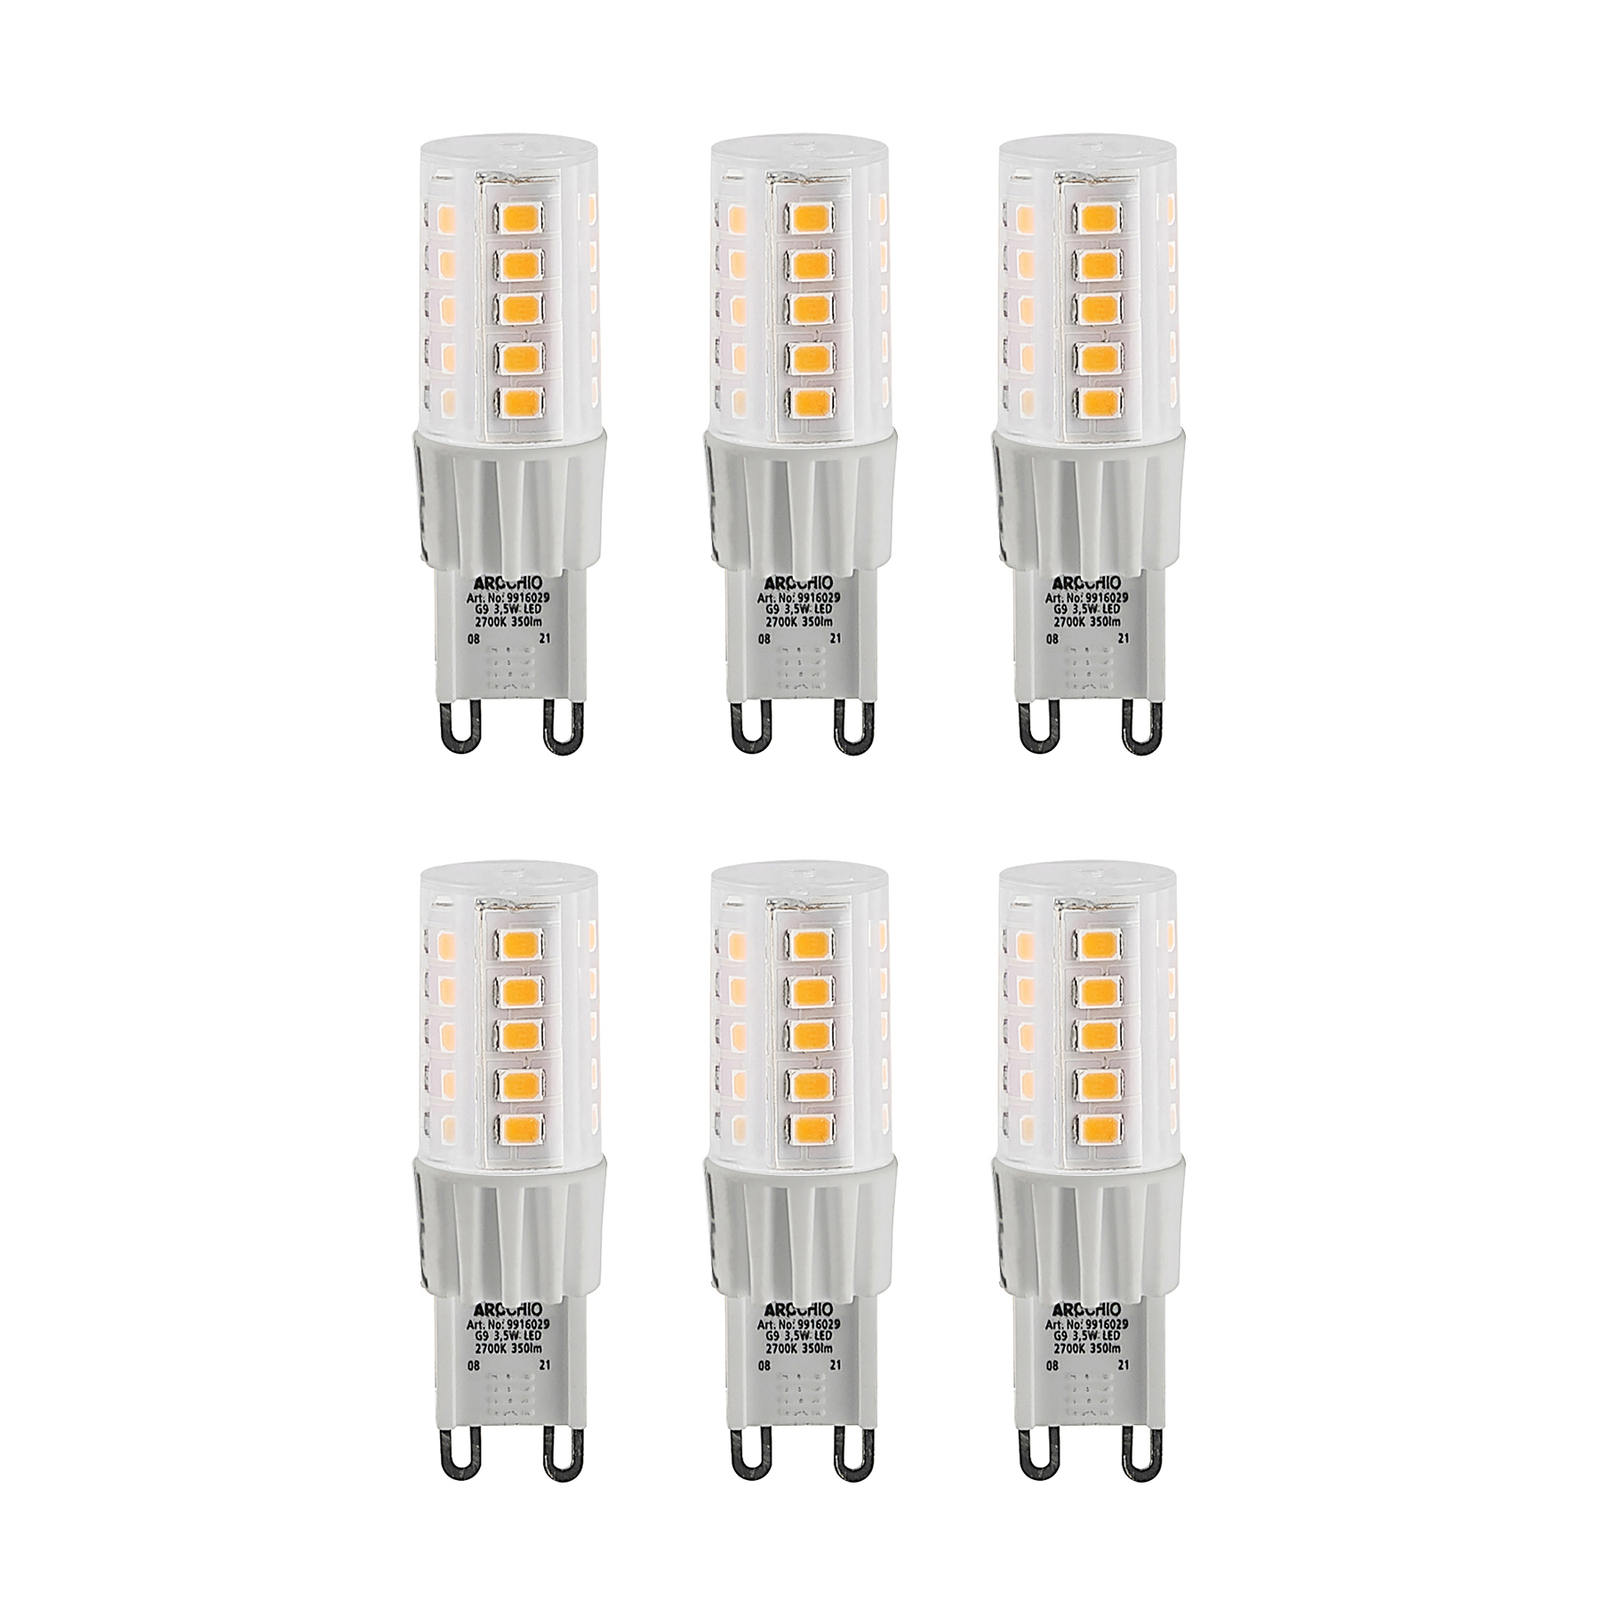 Arcchio bi-pin LED bulb G9 3.5 W 830 6-pack